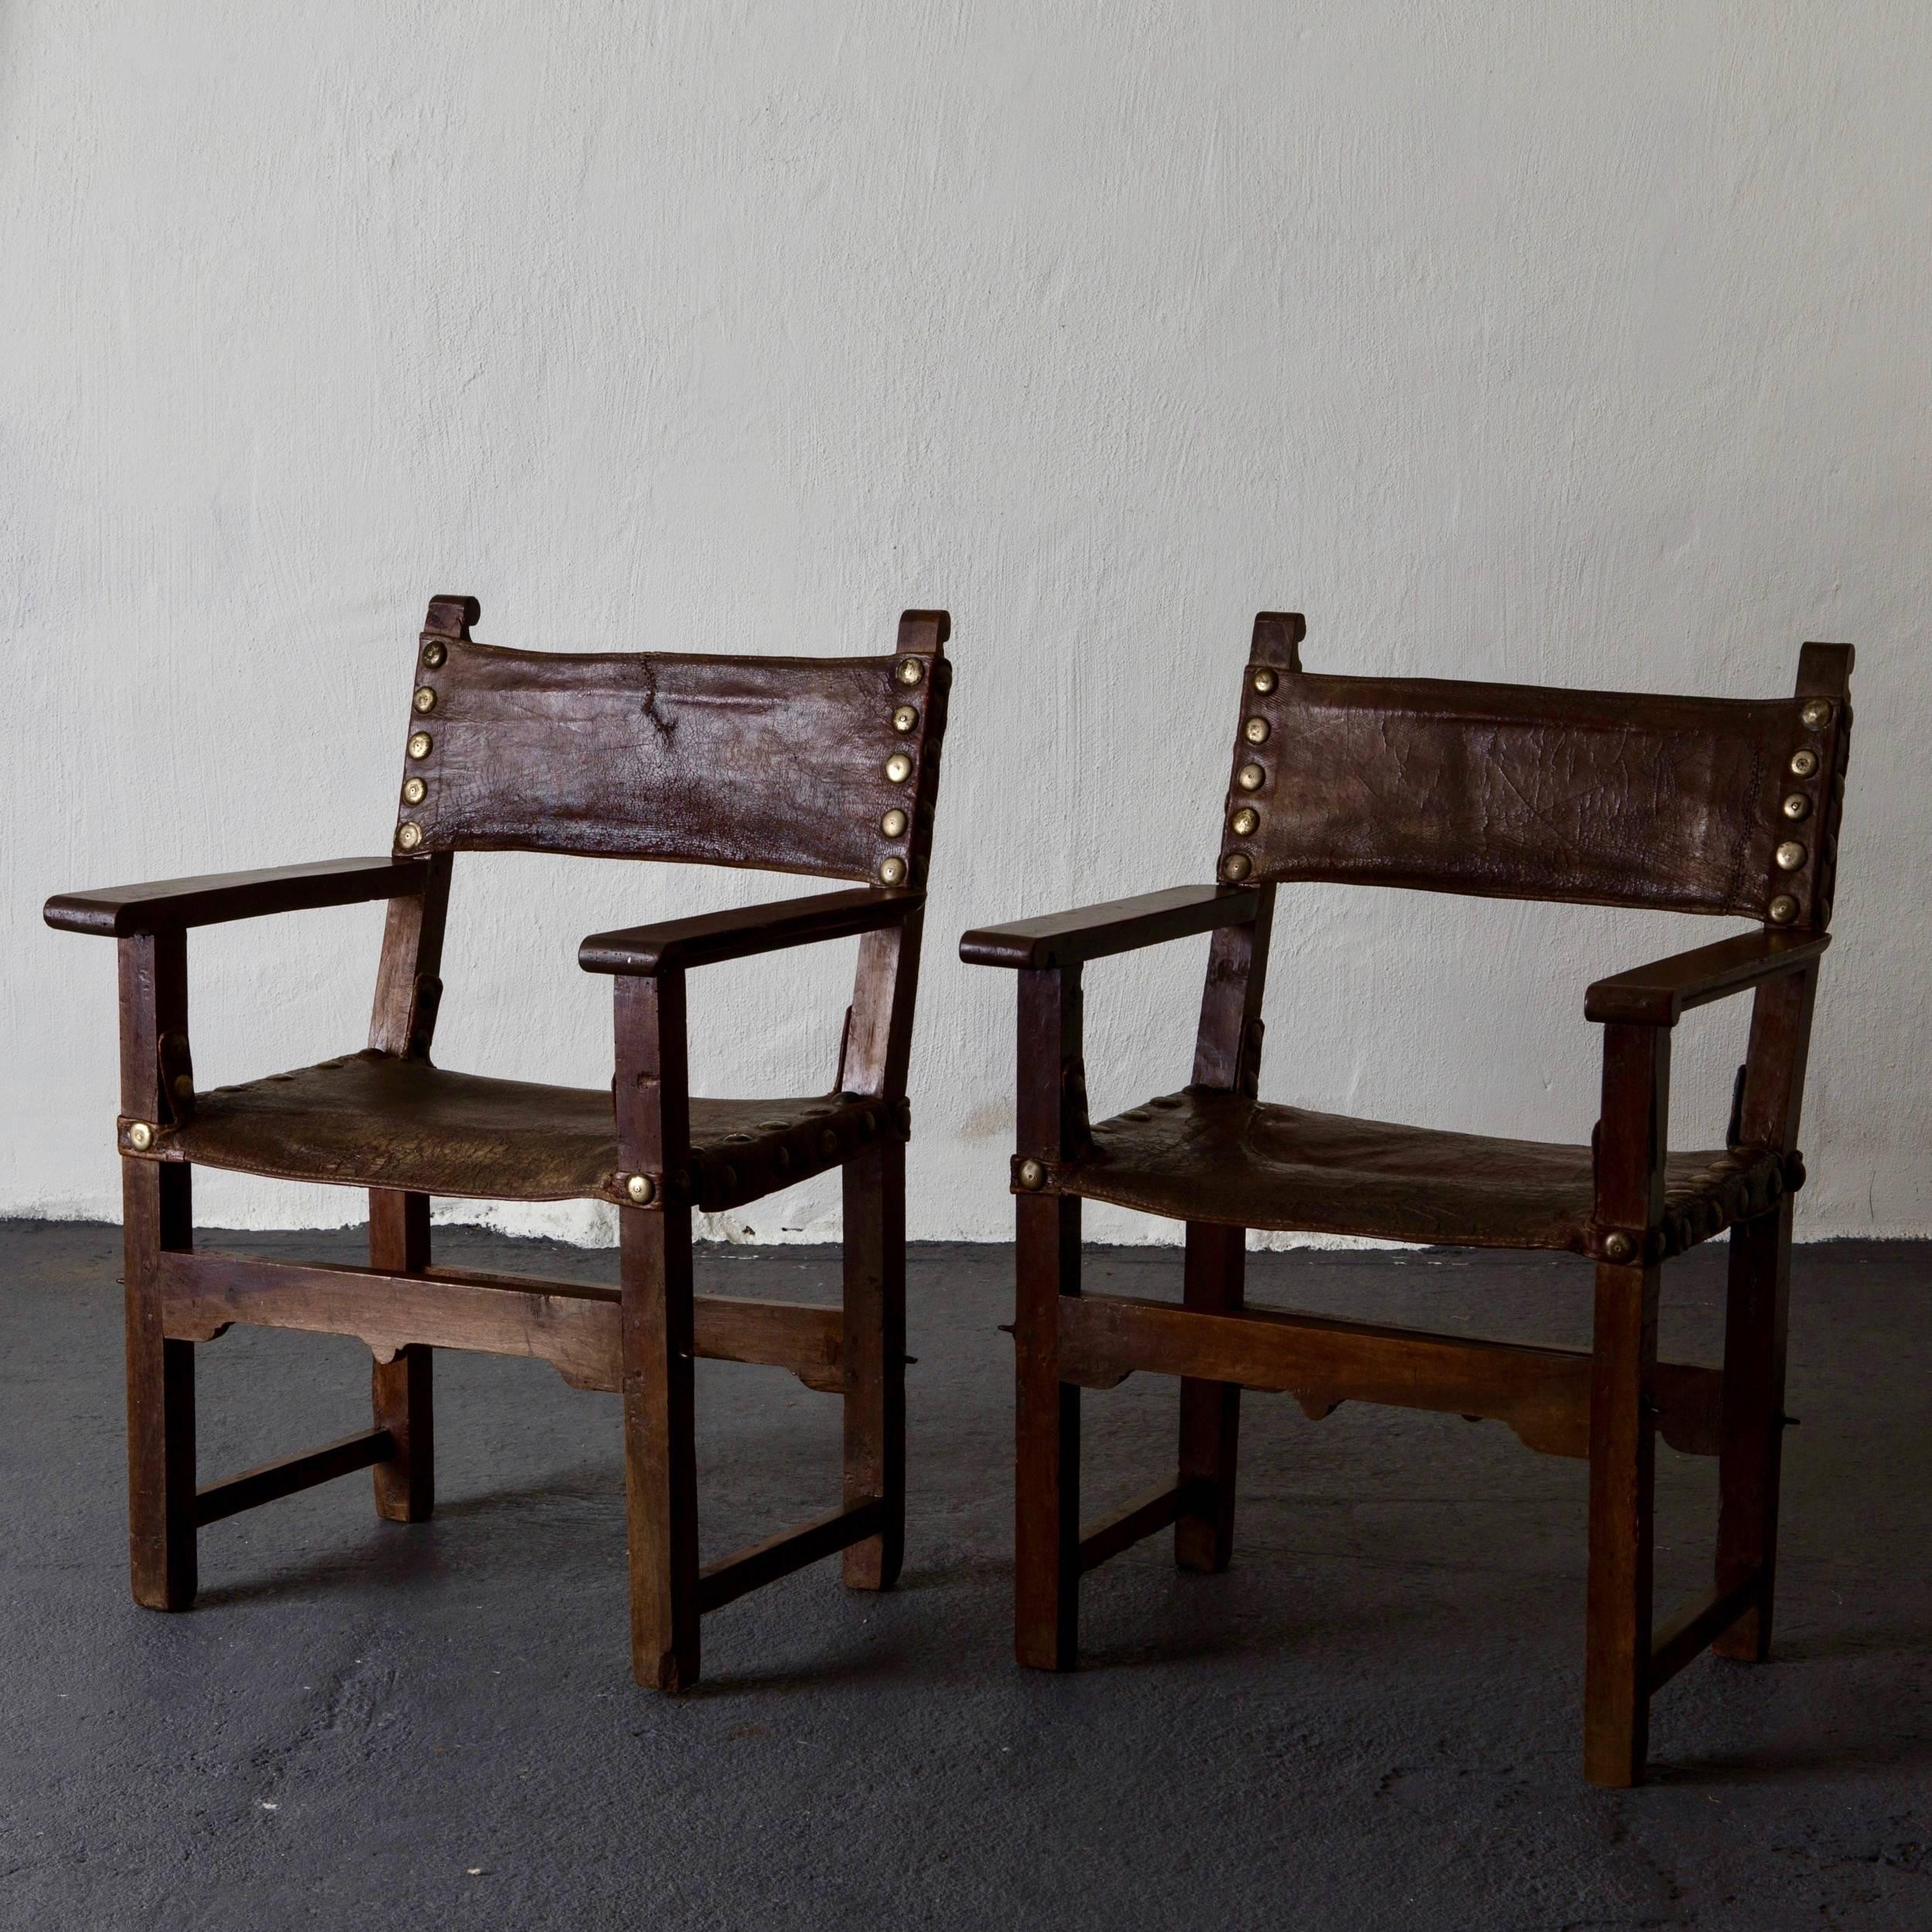 Fauteuils Renaissance italienne en cuir brun 18e siècle, Espagne. Une belle paire de fauteuils fabriqués en Italie à l'époque de la Renaissance, 1600-1650. Dossier et siège rembourrés en cuir d'origine.